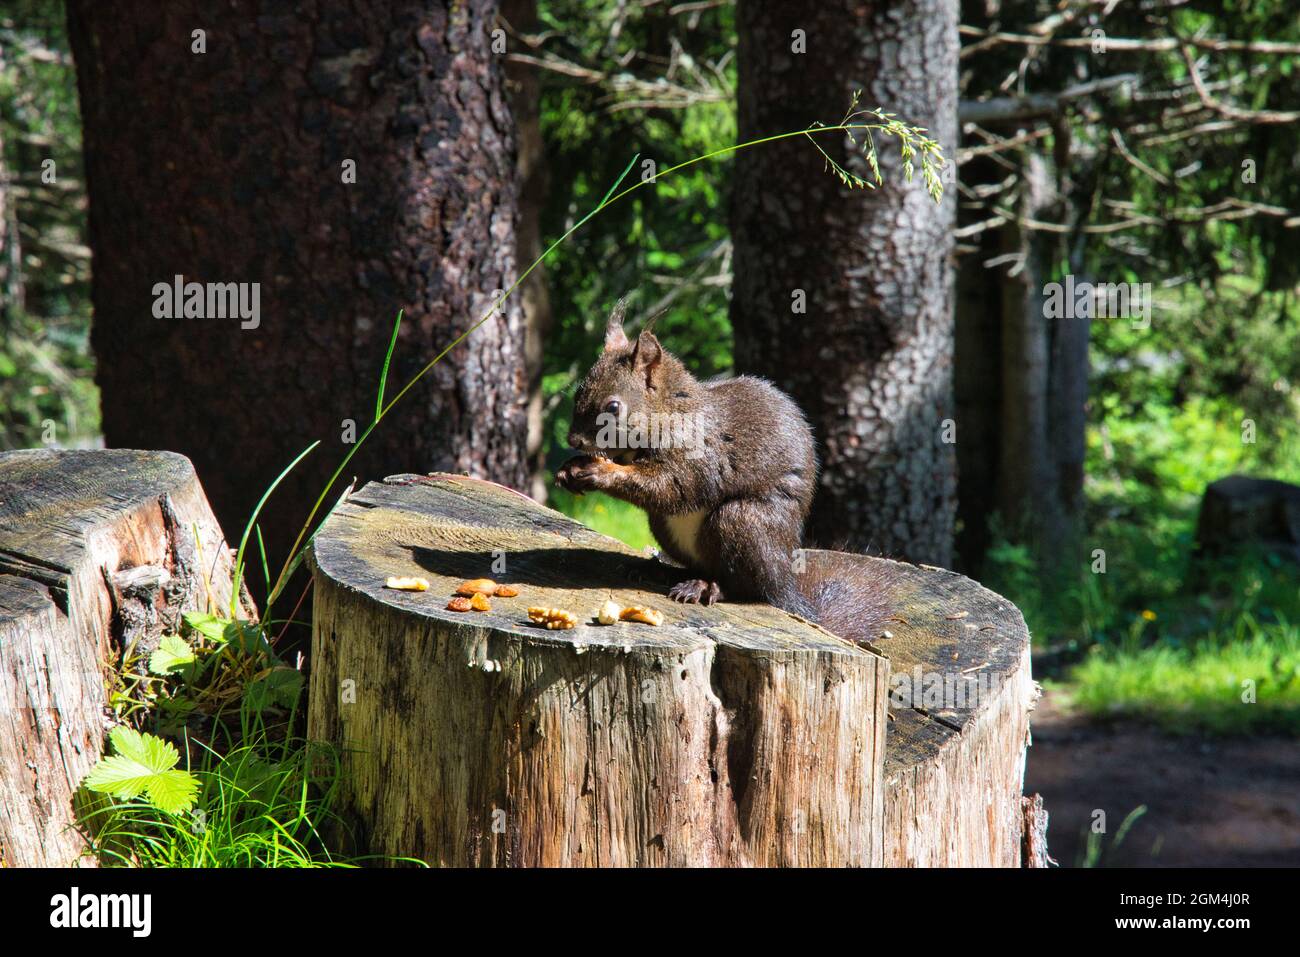 lo scoiattolo siede sul tronco dell'albero nella foresta e mangia una noce, immagine grande dell'animale Foto Stock